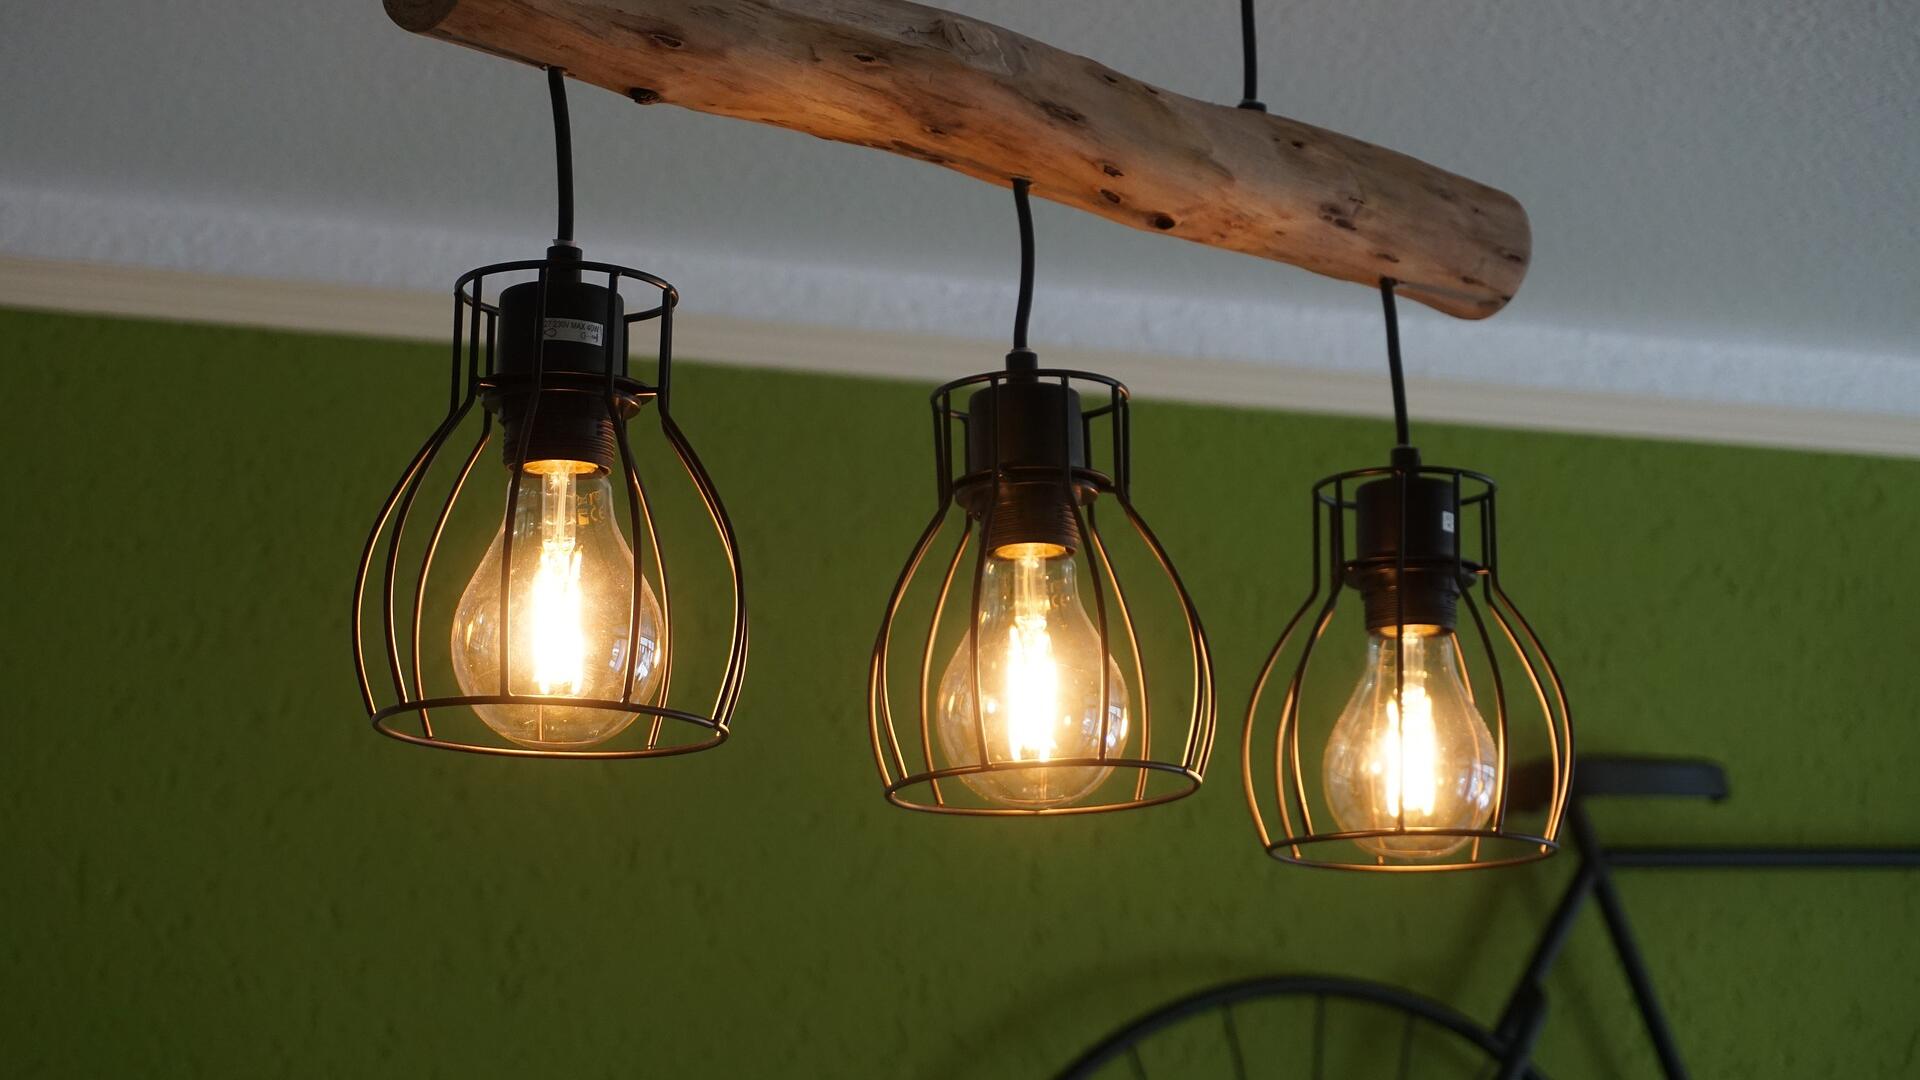 Afbeelding van David Polz via Pixabay huiskamer lamp